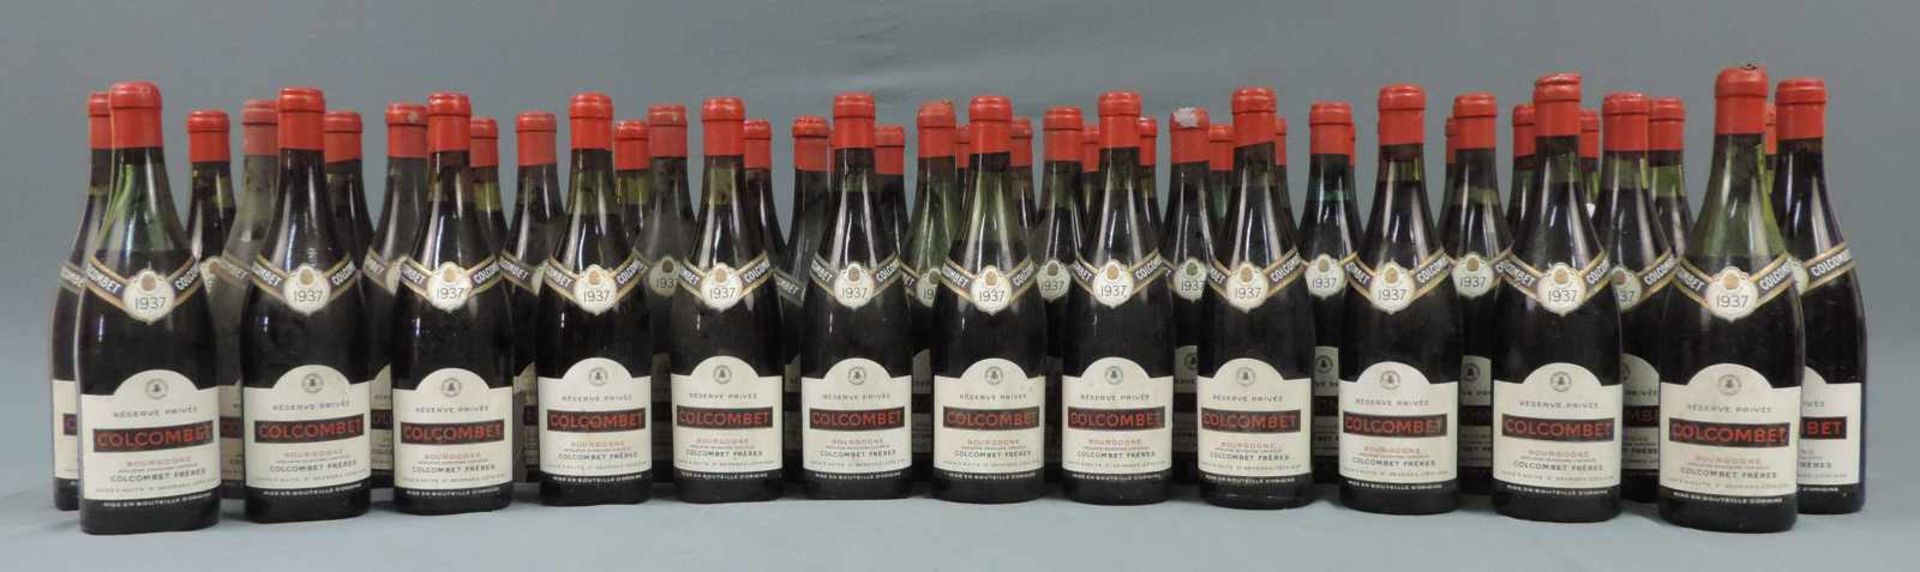 1937 Bourgogne AC von Colcombet Frères, caves à Nuits St. Georges. 49 ganze Flaschen. Reserve